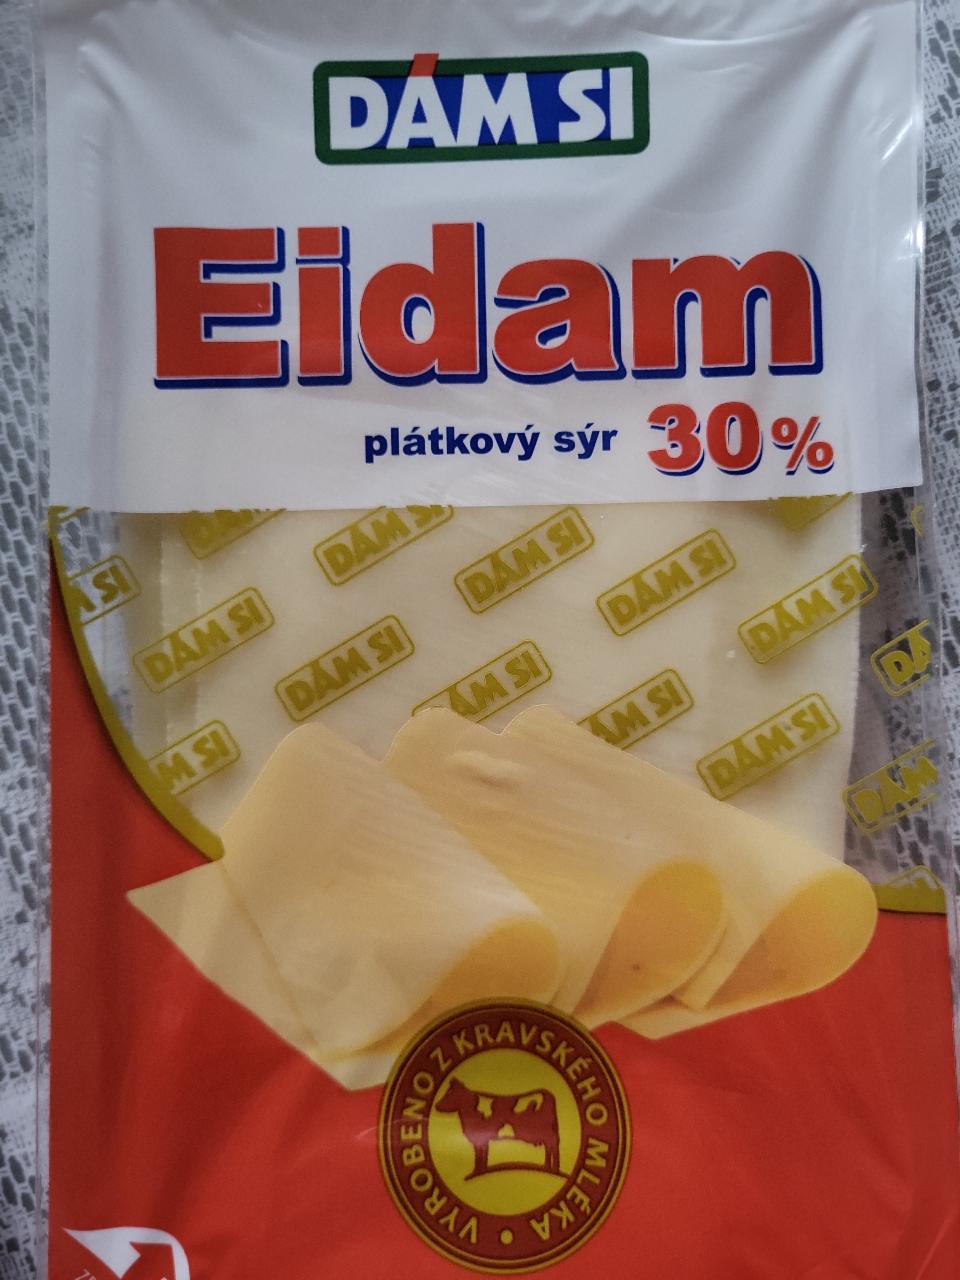 Fotografie - Eidam plátkový sýr 30% Damsi